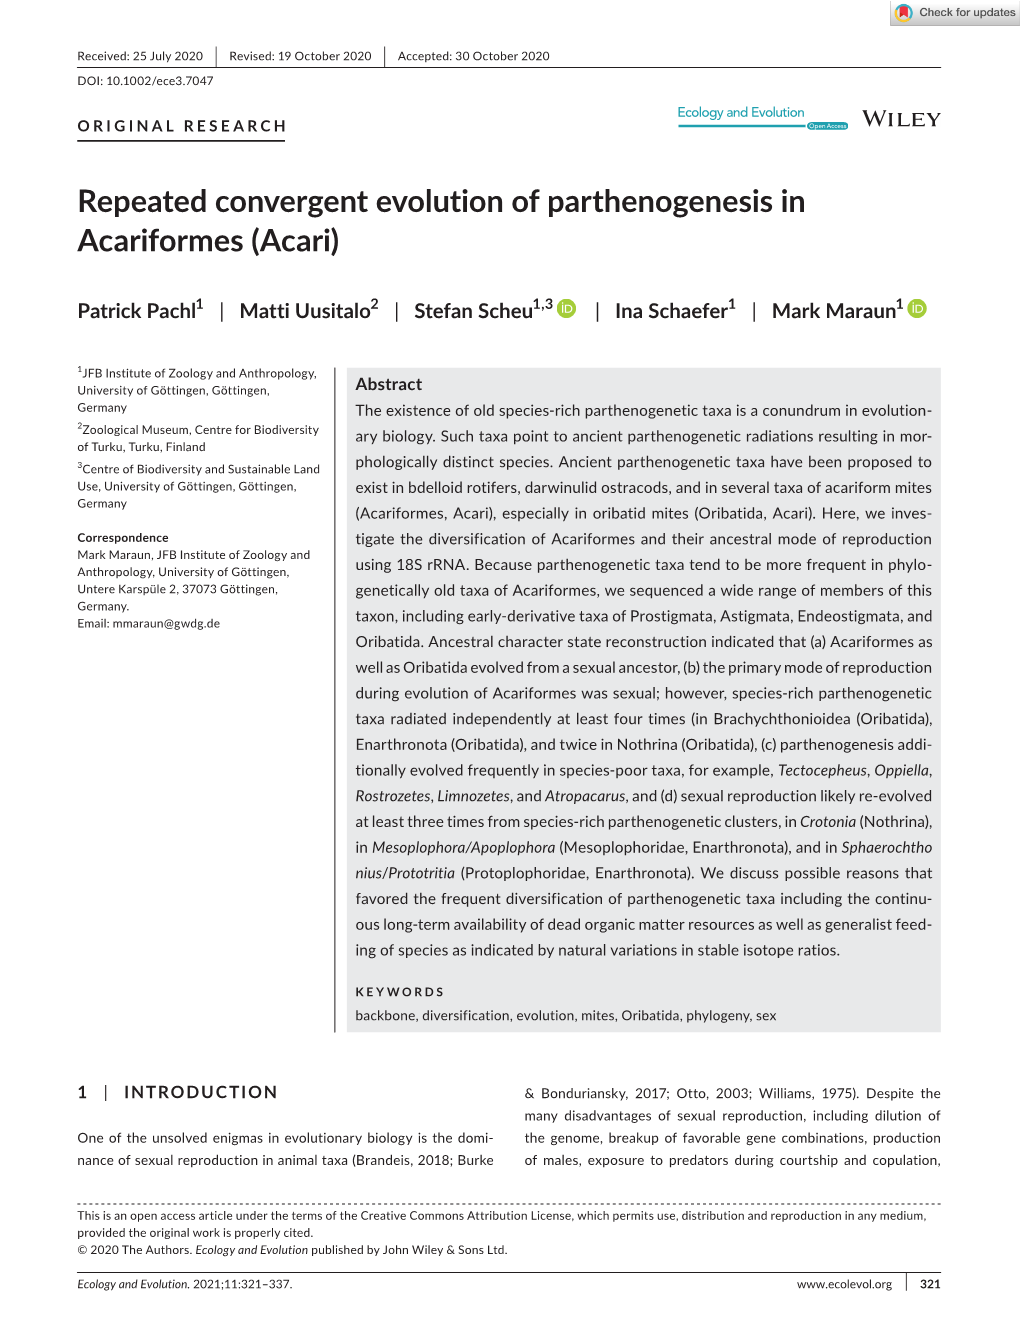 Repeated Convergent Evolution of Parthenogenesis in Acariformes (Acari)